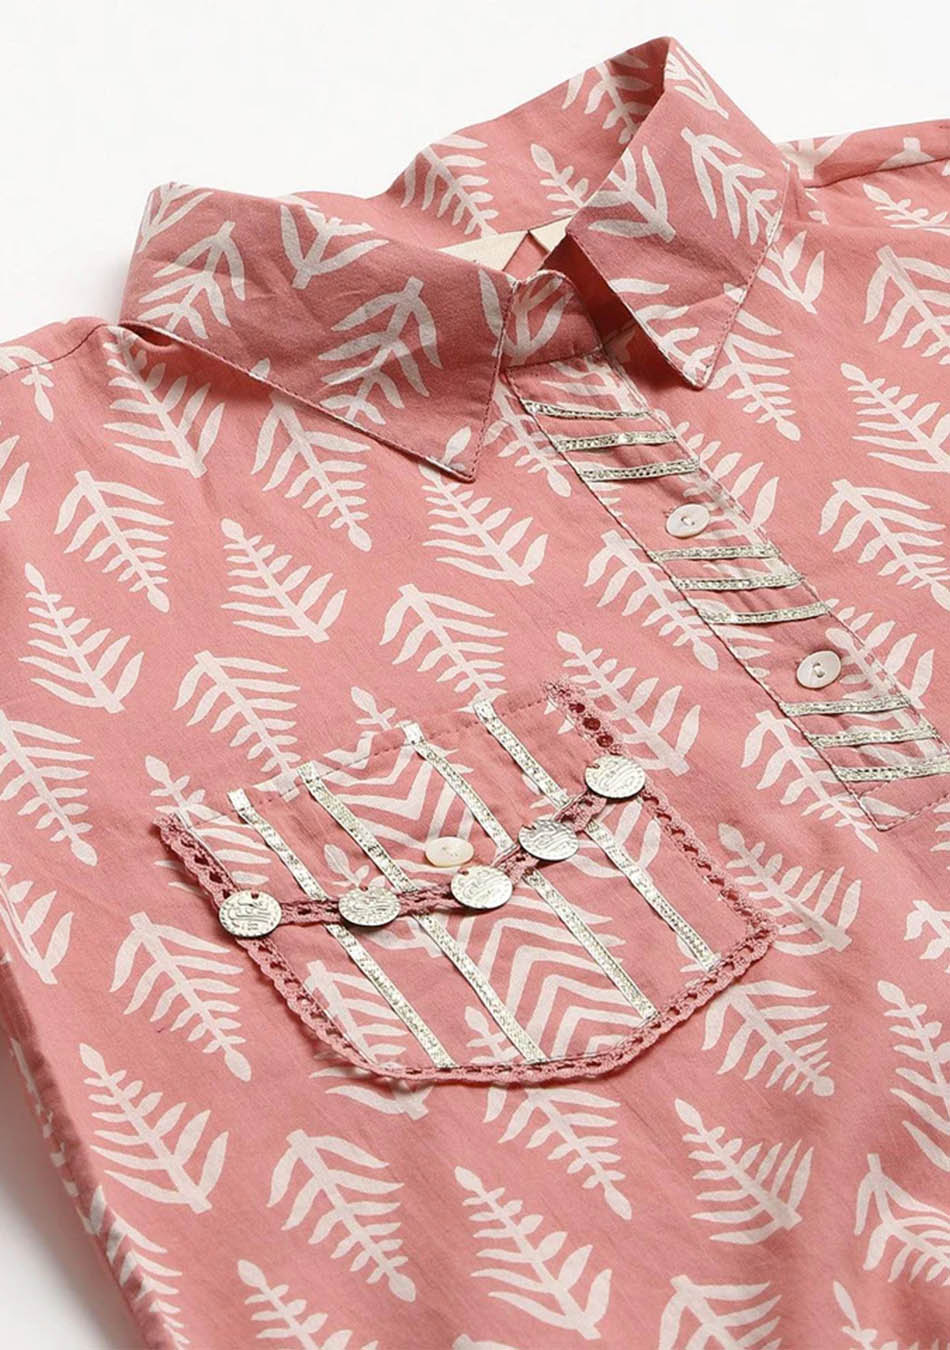 Pink Cotton Shirt Style Kurta Hem Cuffed Pant Co-ord Set